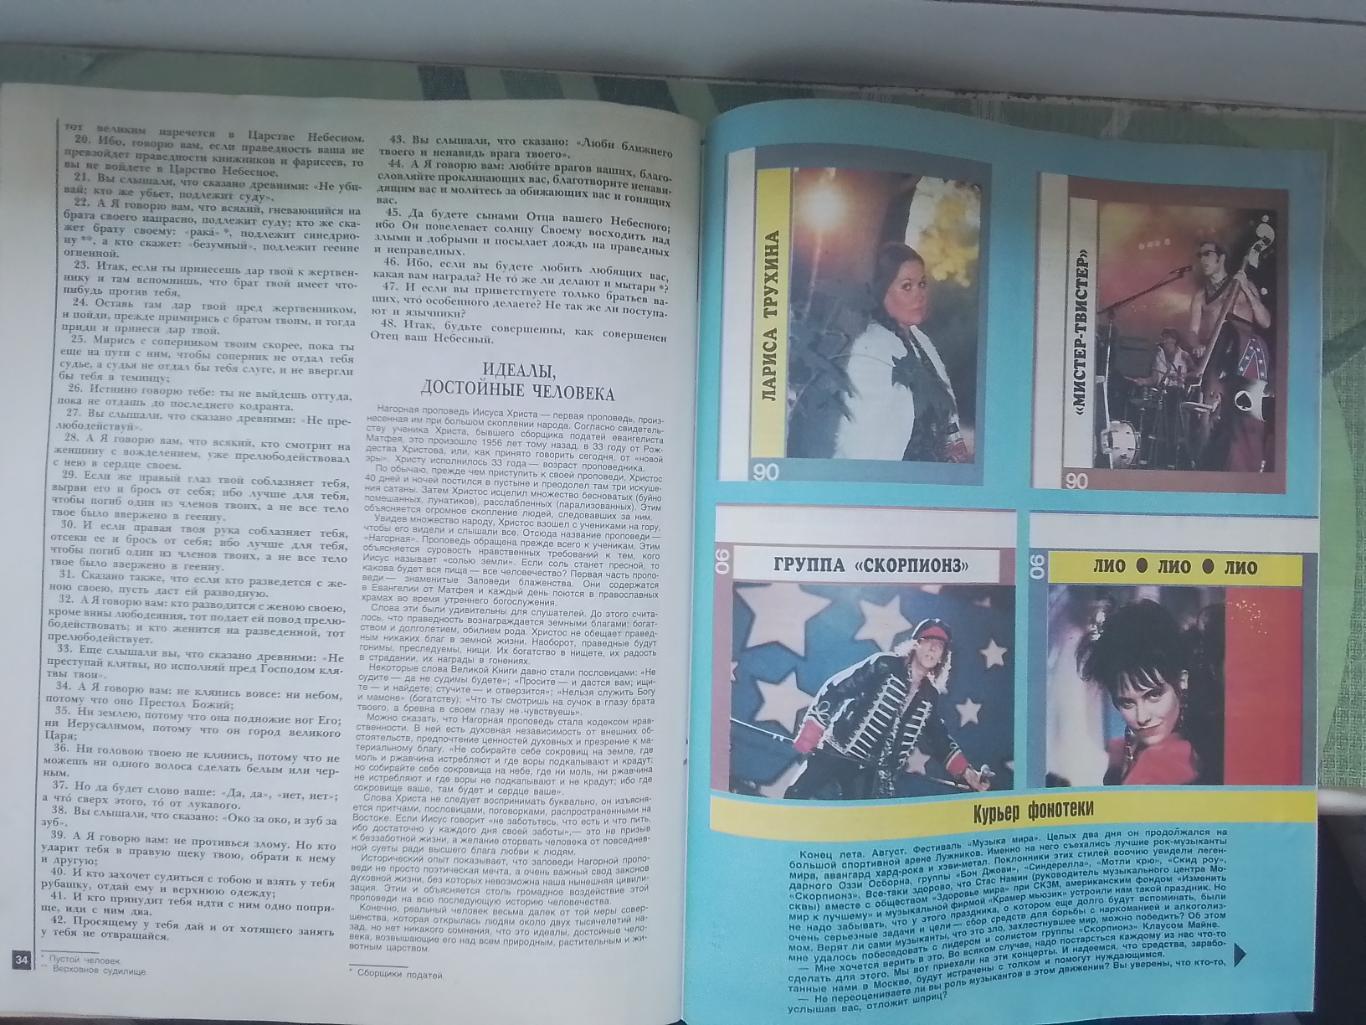 Журнал Работница № 11 1989 5